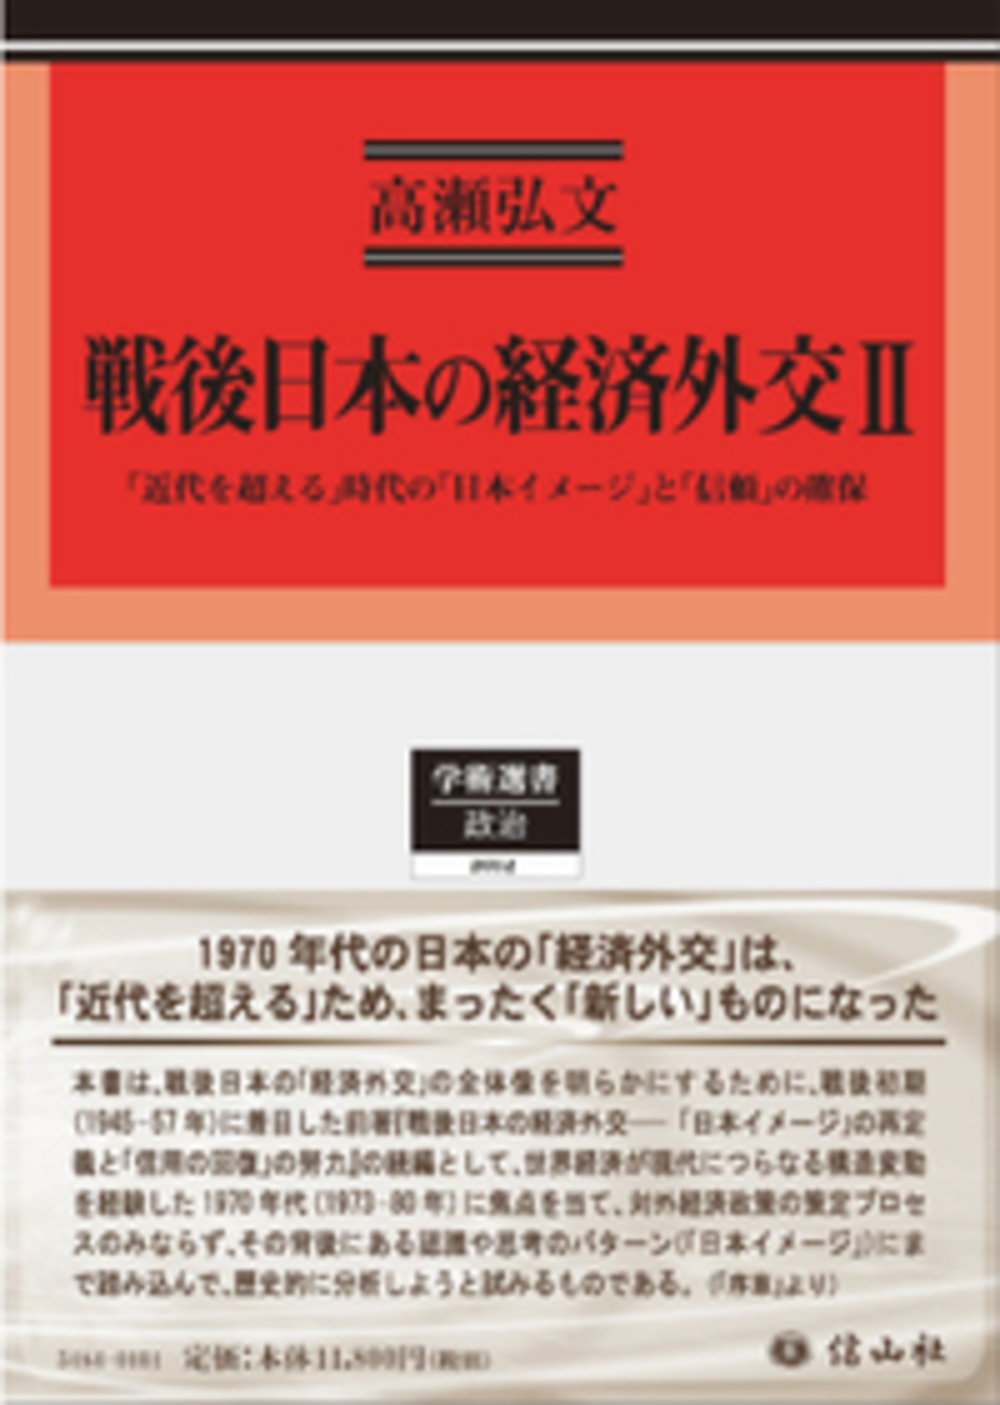 戦後日本の経済外交 Ⅱ ー「近代を超える」時代の「日本イメージ」と「信頼」の確保